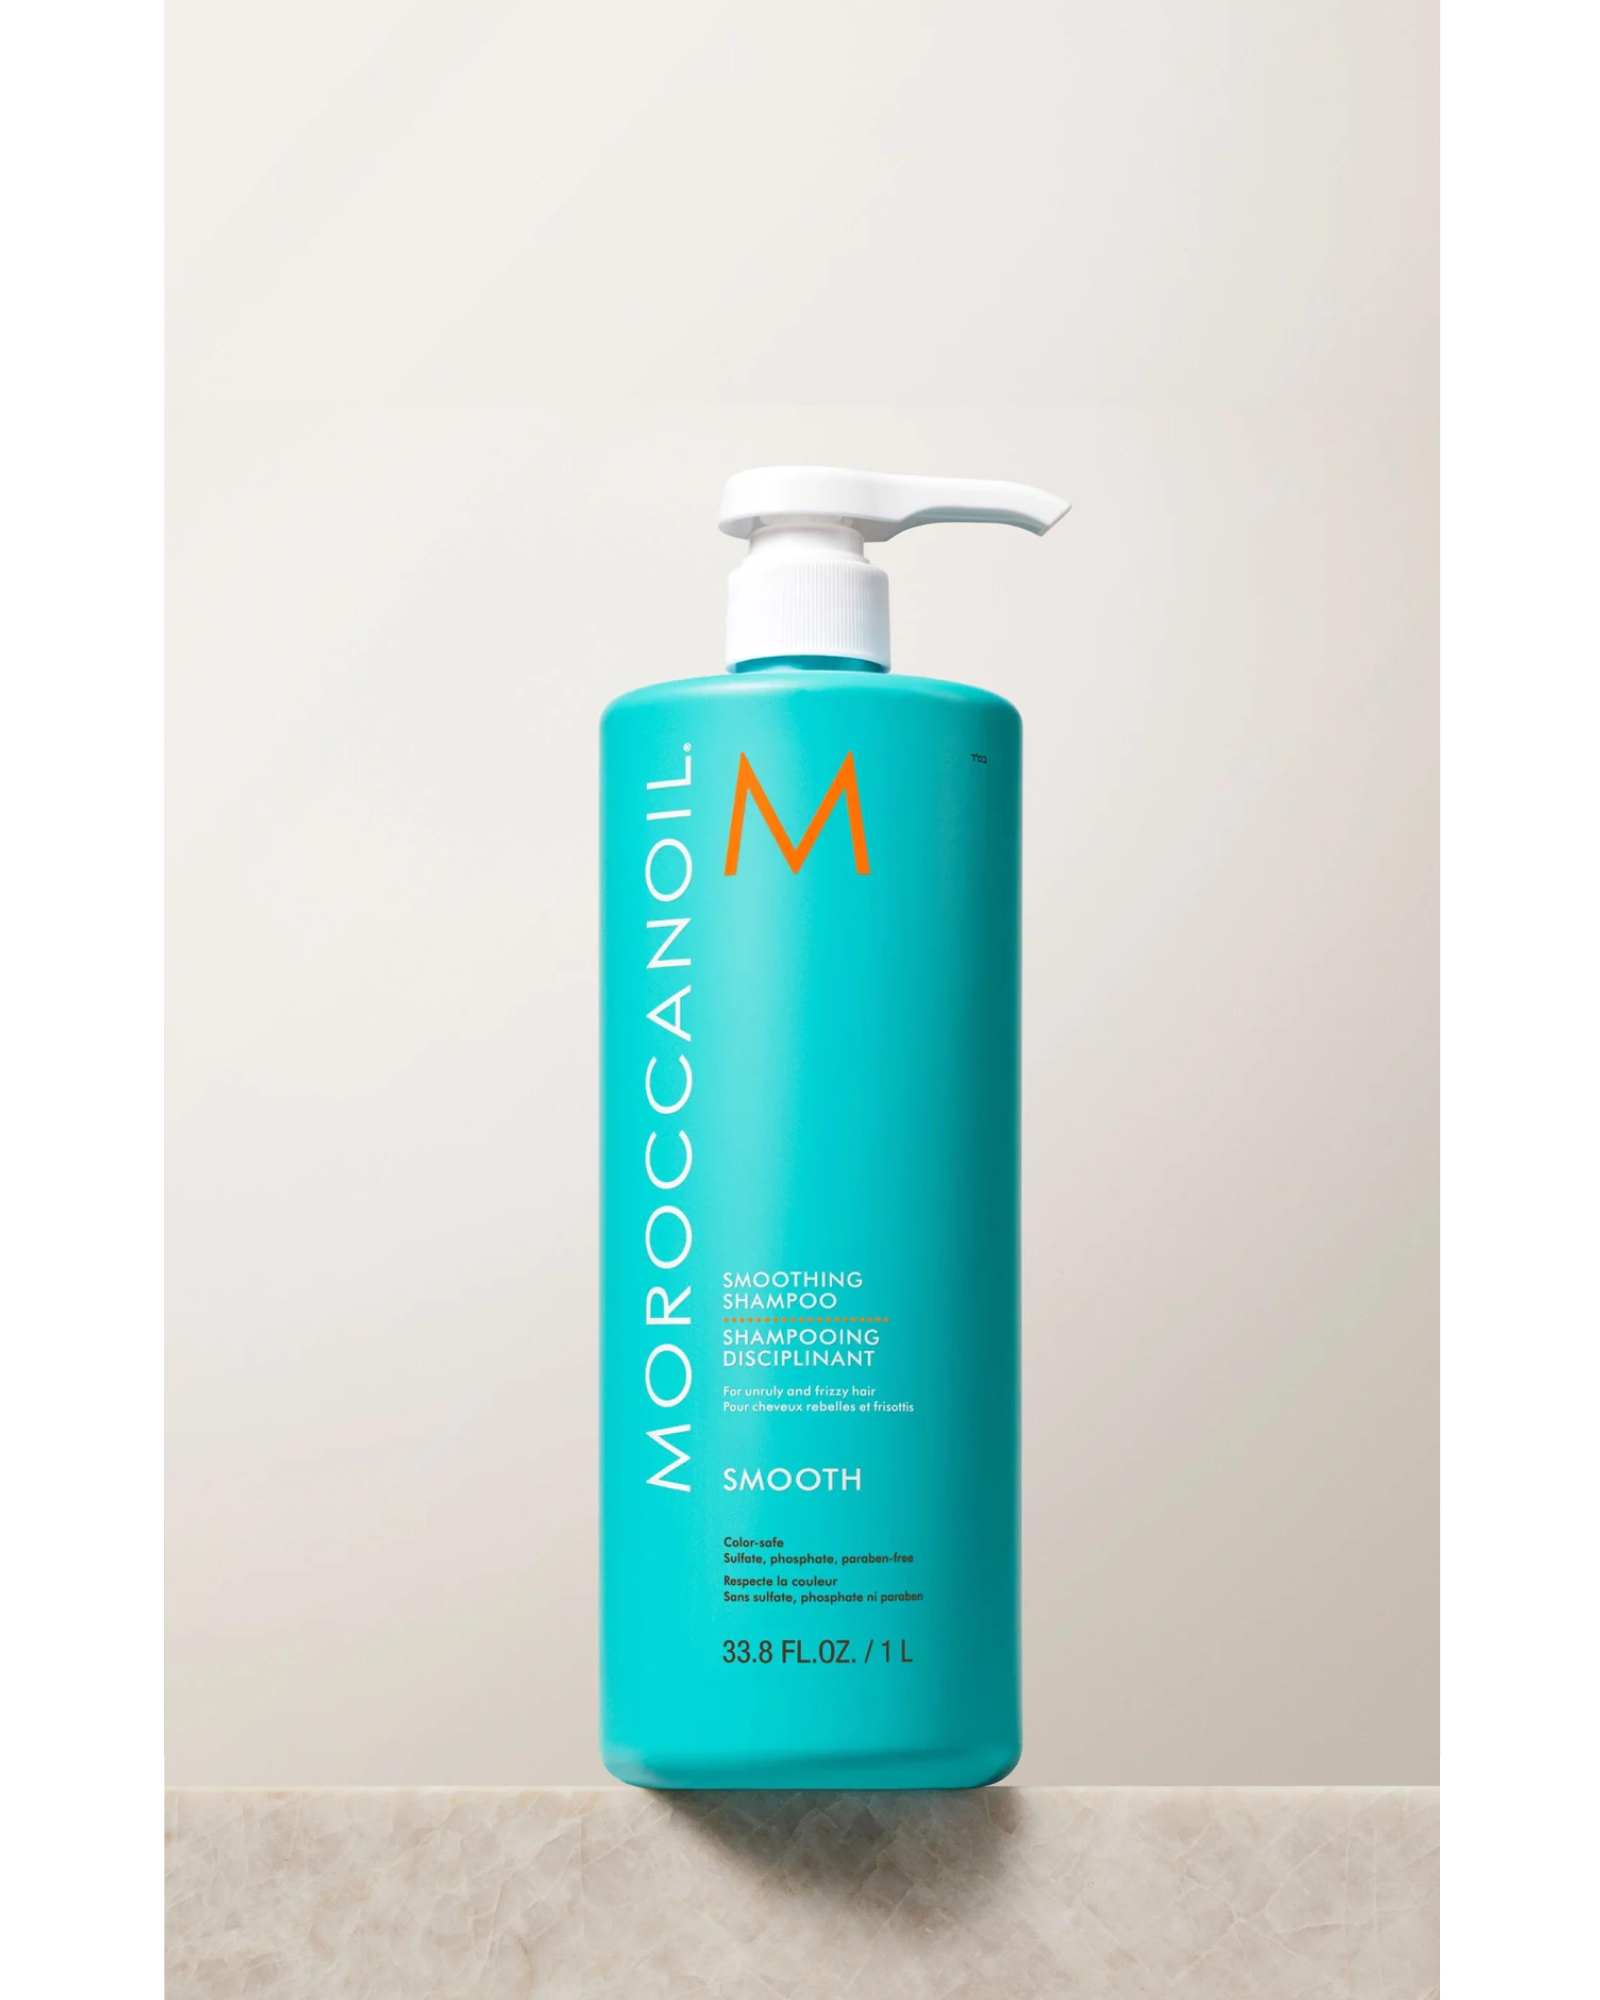 Зволожуючий шампунь від MoroccanOil (MoroccanOil Smoothing Shampoo)